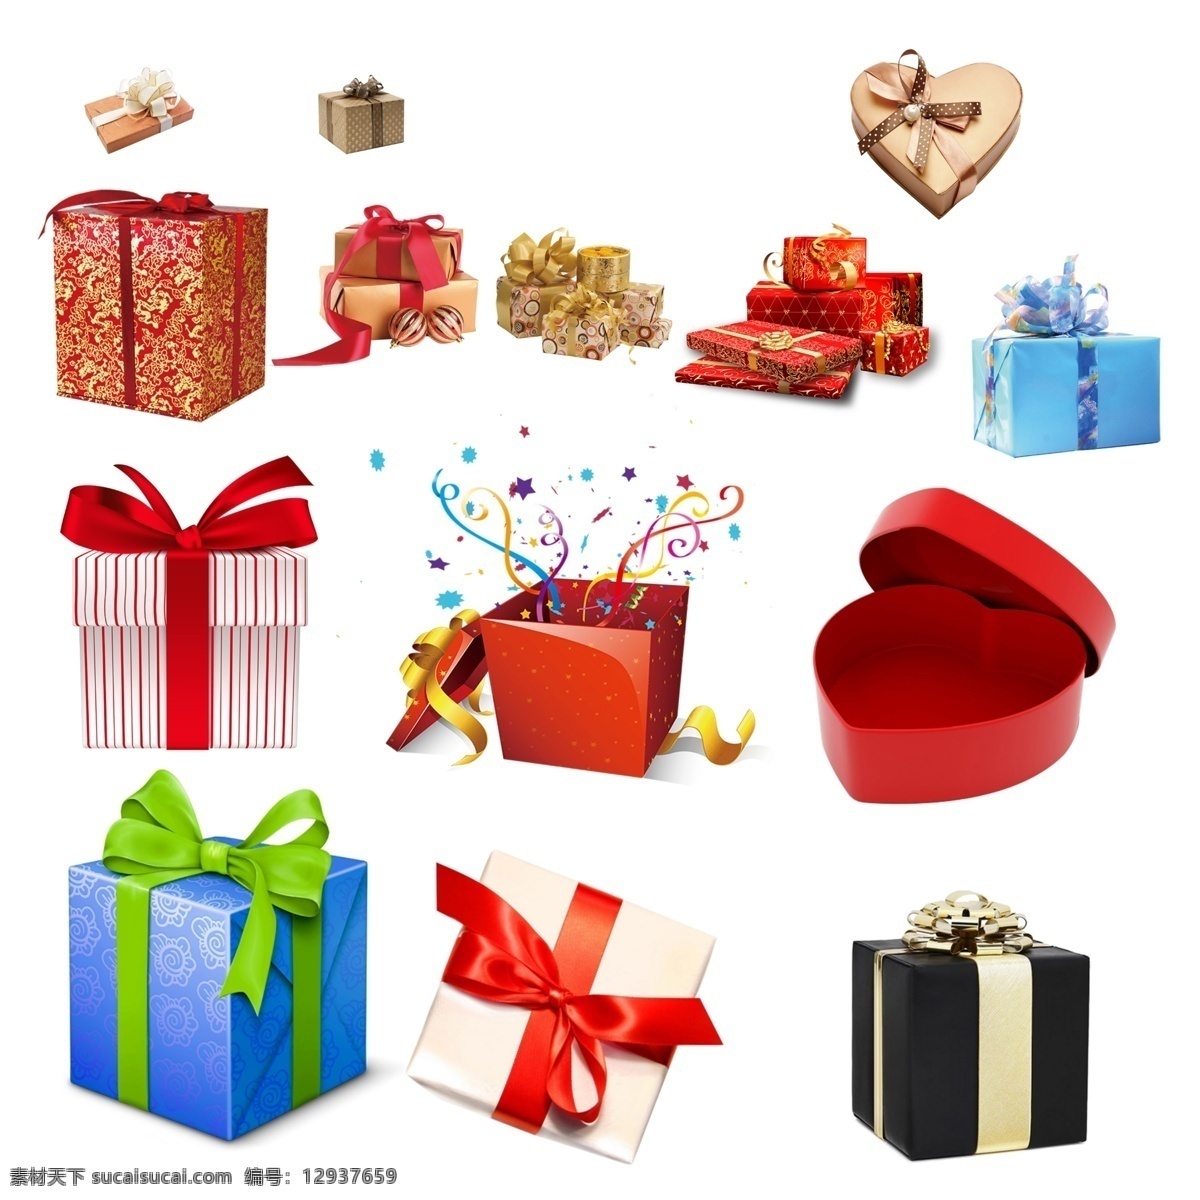 礼品 礼品元素 地产礼品 活动礼品 活动元素 礼盒元素 各种礼品礼盒 分层